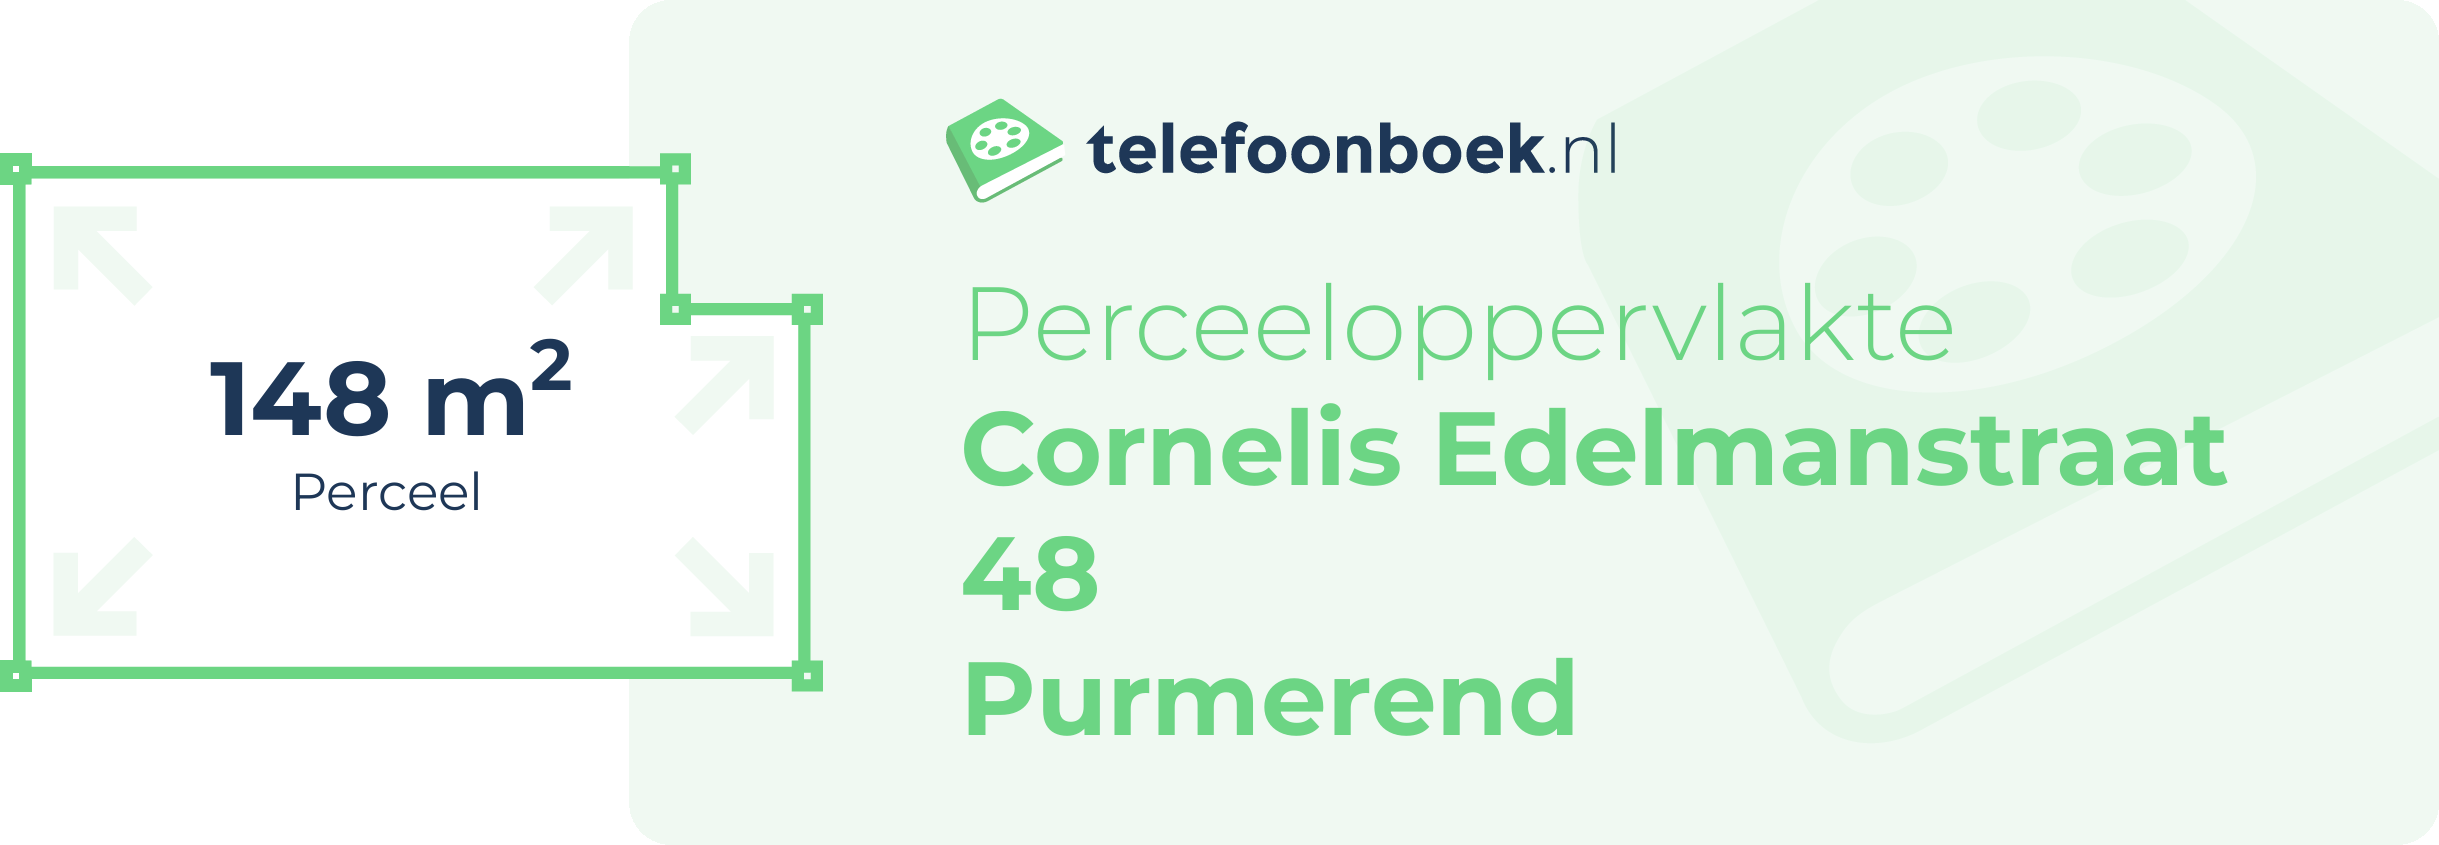 Perceeloppervlakte Cornelis Edelmanstraat 48 Purmerend